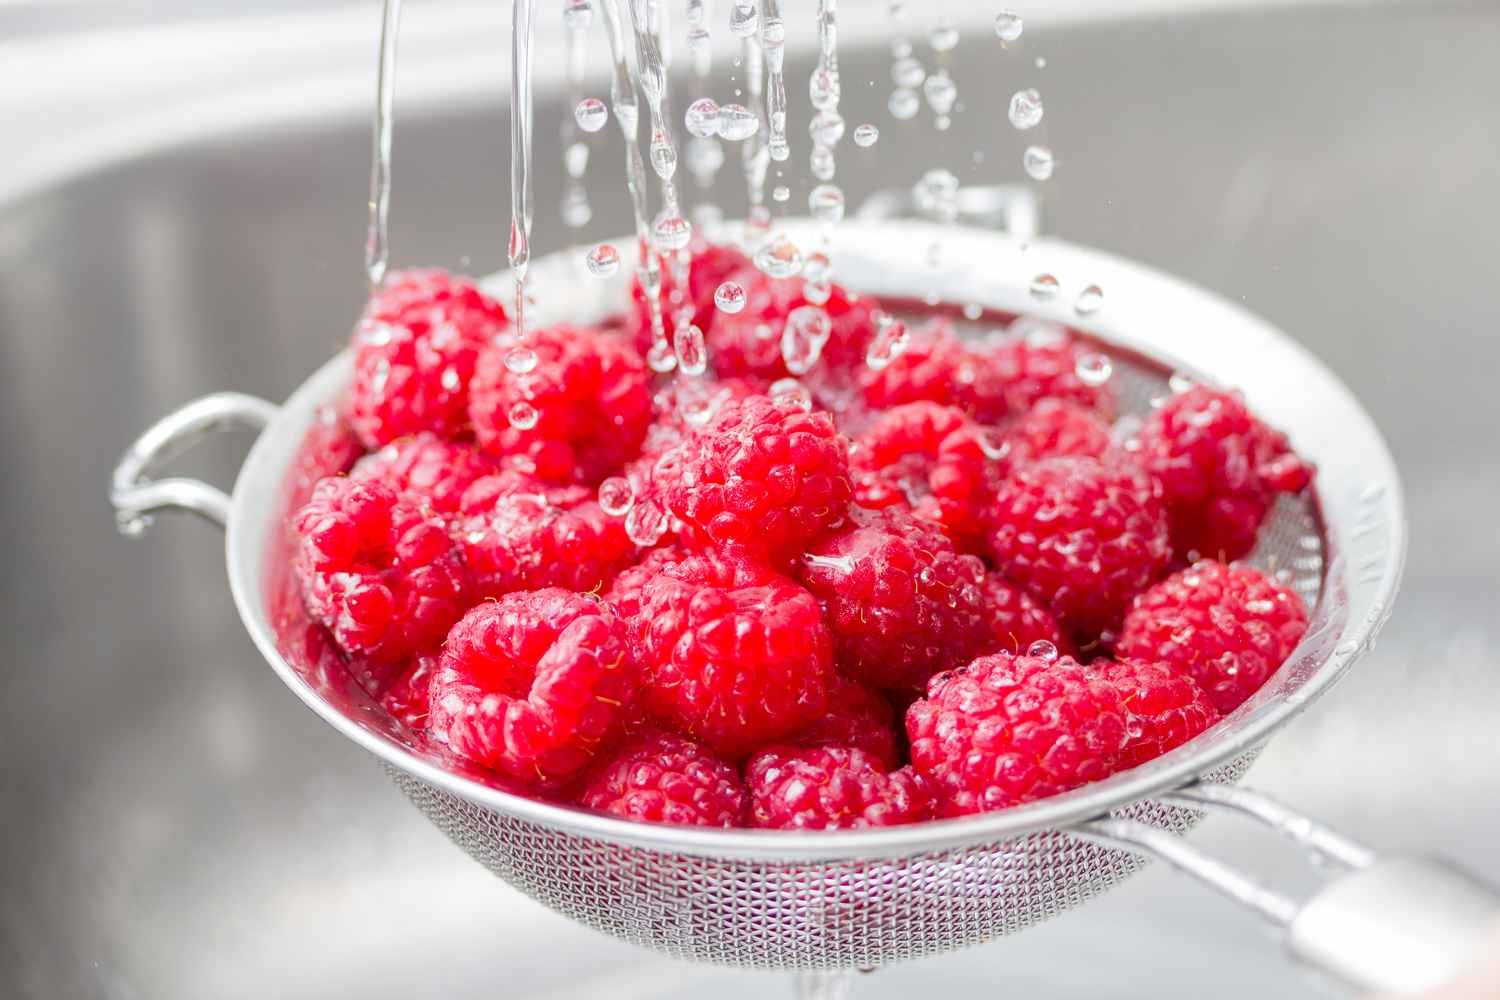 washing raspberries